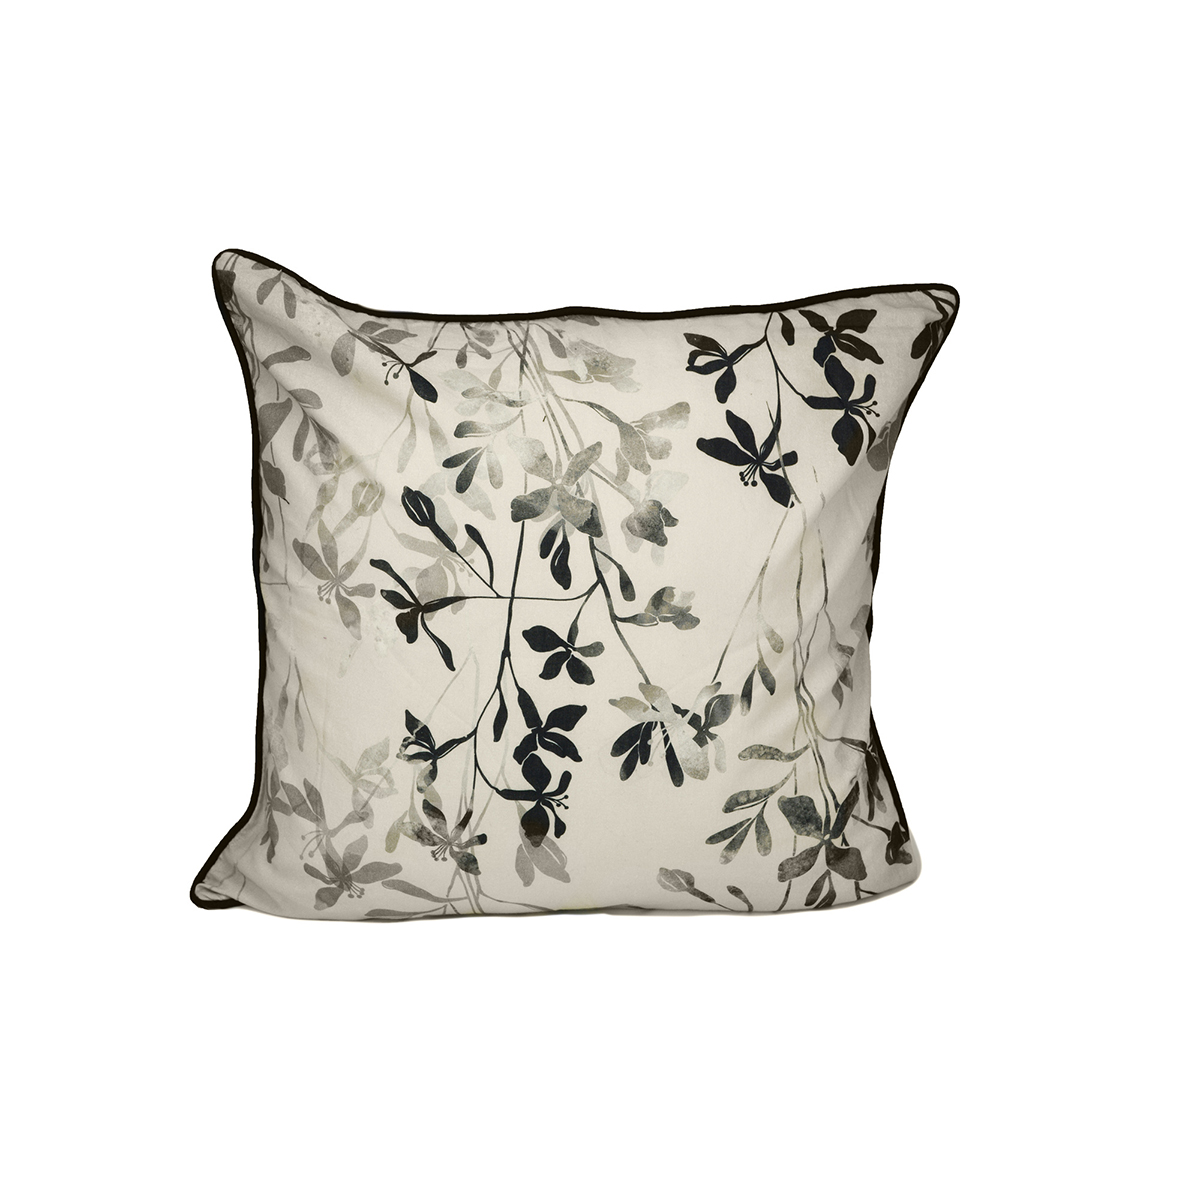 Donna Sharp Lexington Floral Decorative Pillow - 18x18